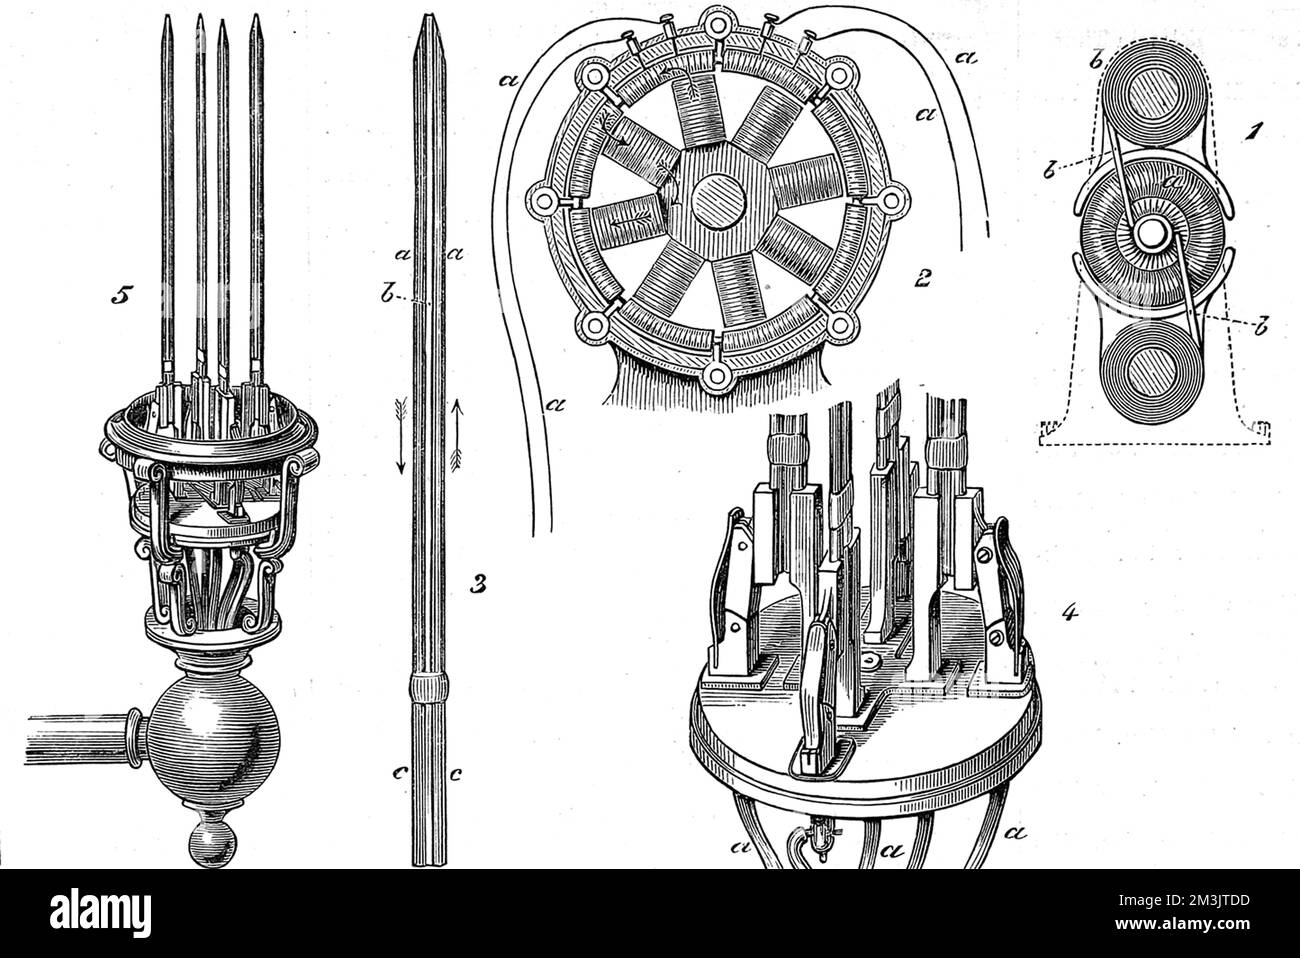 Diagrammi che mostrano la lampada a candela di Jablochkoff. Paul Jablochkoff (1847-1894) è stato un ingegnere telegrafico russo che avrebbe ricoperto la carica di direttore dei telegrafi tra Mosca e Kursk. Durante i viaggi in Francia nel 1876 sviluppò la sua candela elettrica, la prima lampada ad essere usata in grandi quantità. I carboni erano in posizione verticale, paralleli l'uno all'altro, il che significava che la candela non richiedeva complessi meccanismi di regolazione, ma la sua importanza principale era che portava la luce elettrica all'attenzione del pubblico. Commercializzato dalla Società Generale D'Electricite e fu utilizzato per illuminare strade, edifici pubblici Foto Stock